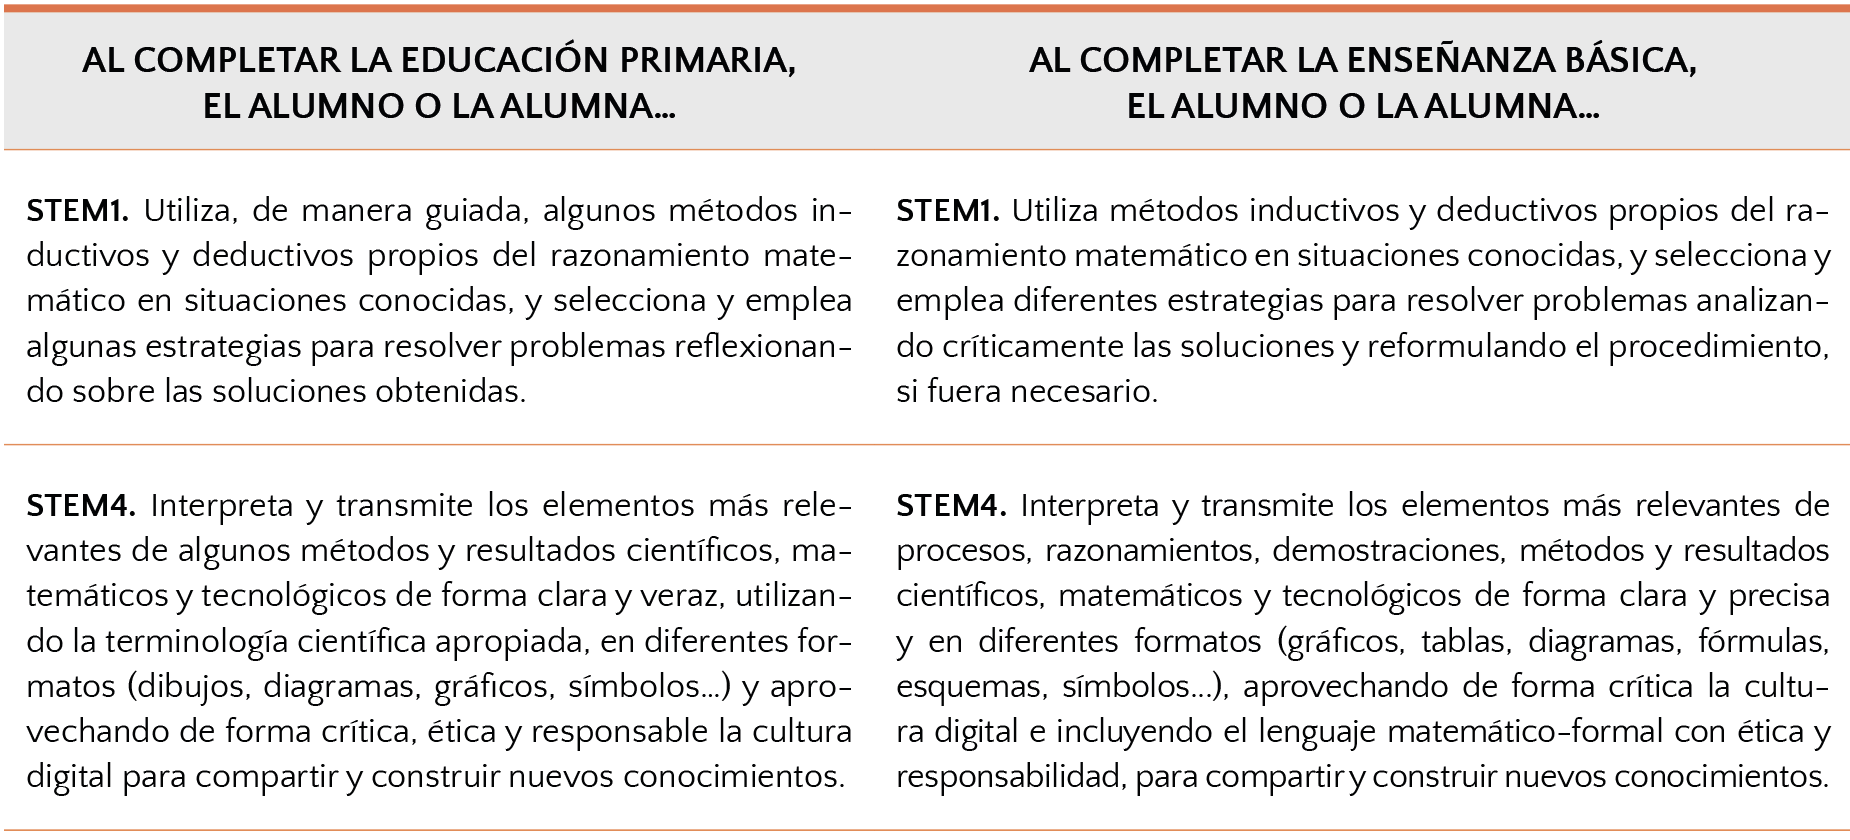 Descriptores operativos de la competencia STEM vinculados explícitamente a la competencia matemática en el Decreto 157/2022 (p. 21)